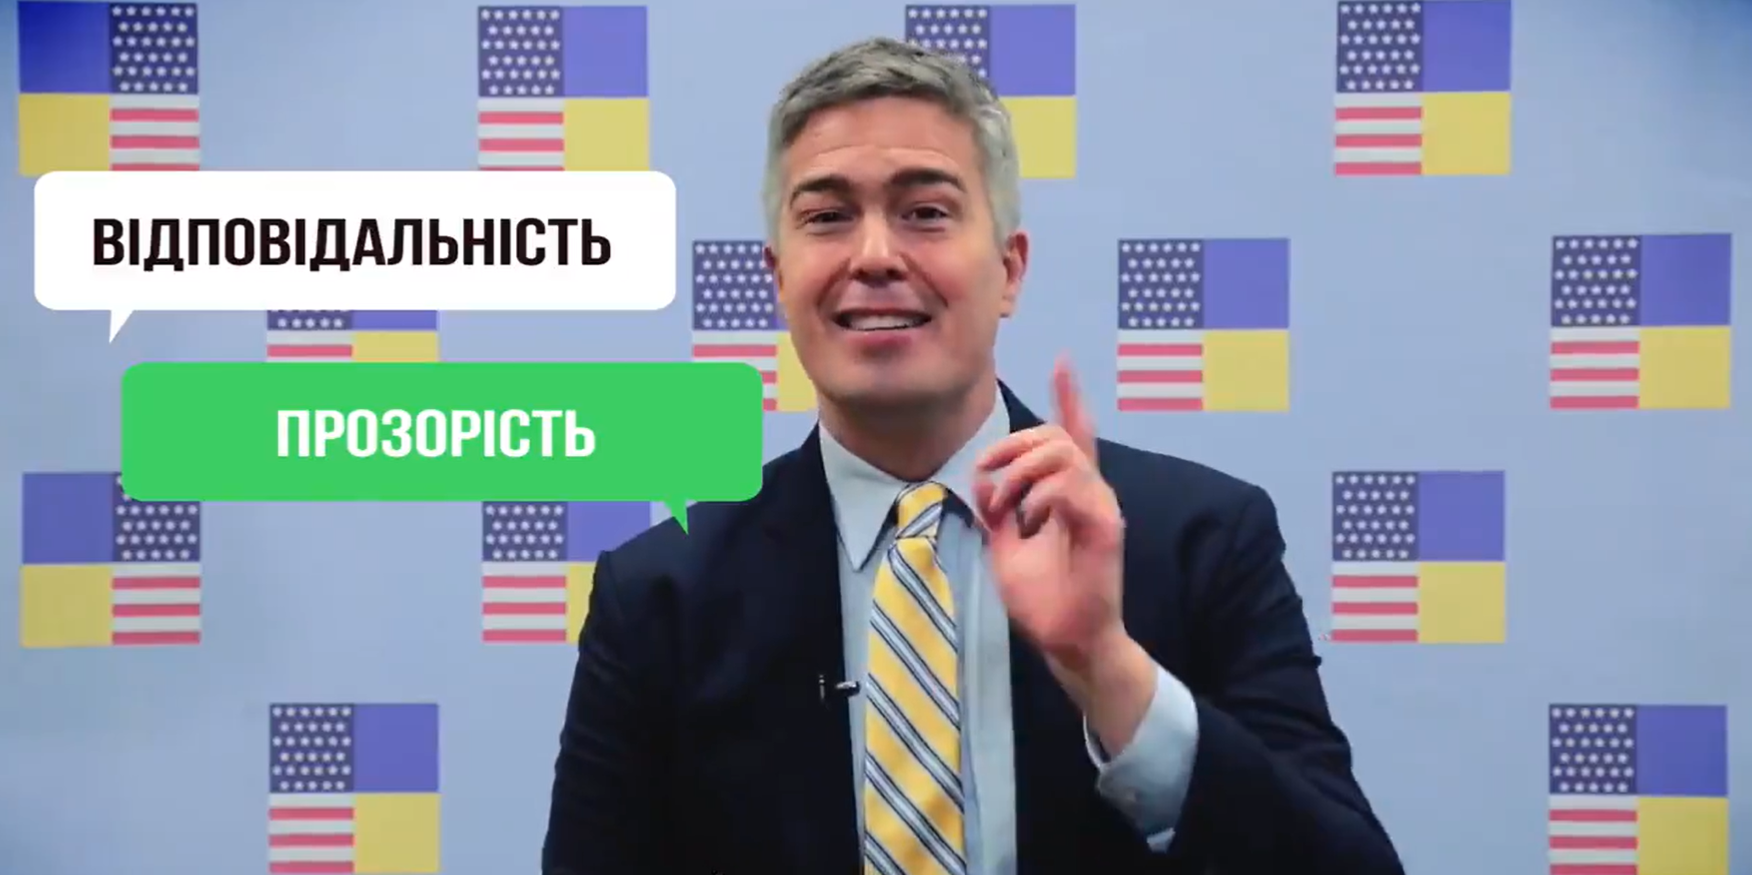 Дипломат из посольства США назвал свои любимые украинские слова